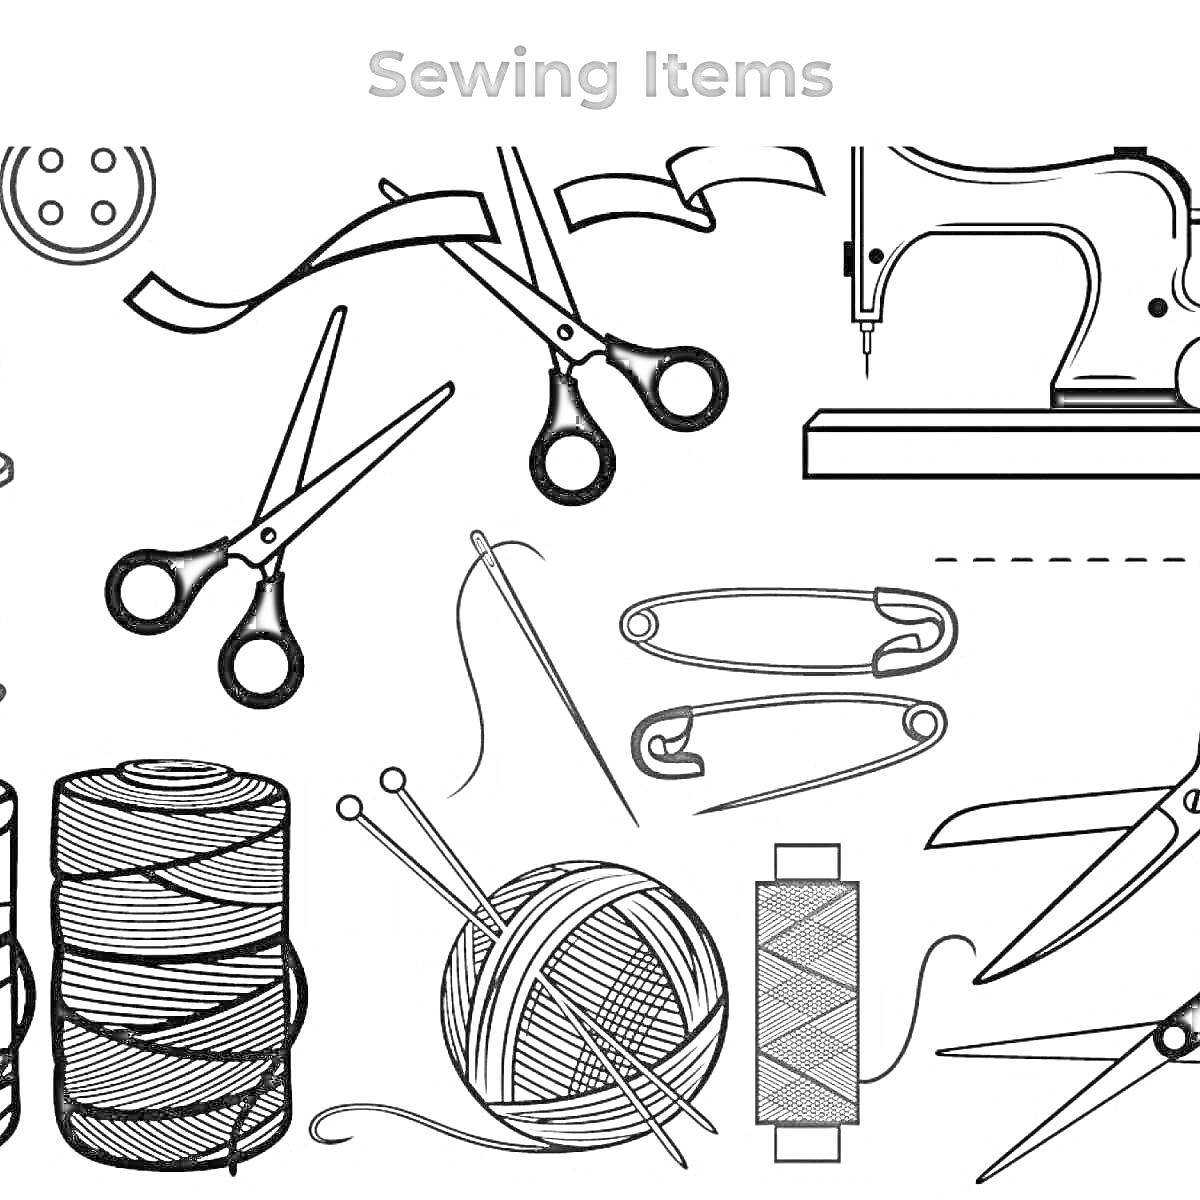 Швейные предметы: пуговица, ножницы, иглы, швейная машинка, катушка с нитками, клубок пряжи, булавки, бобина с нитками